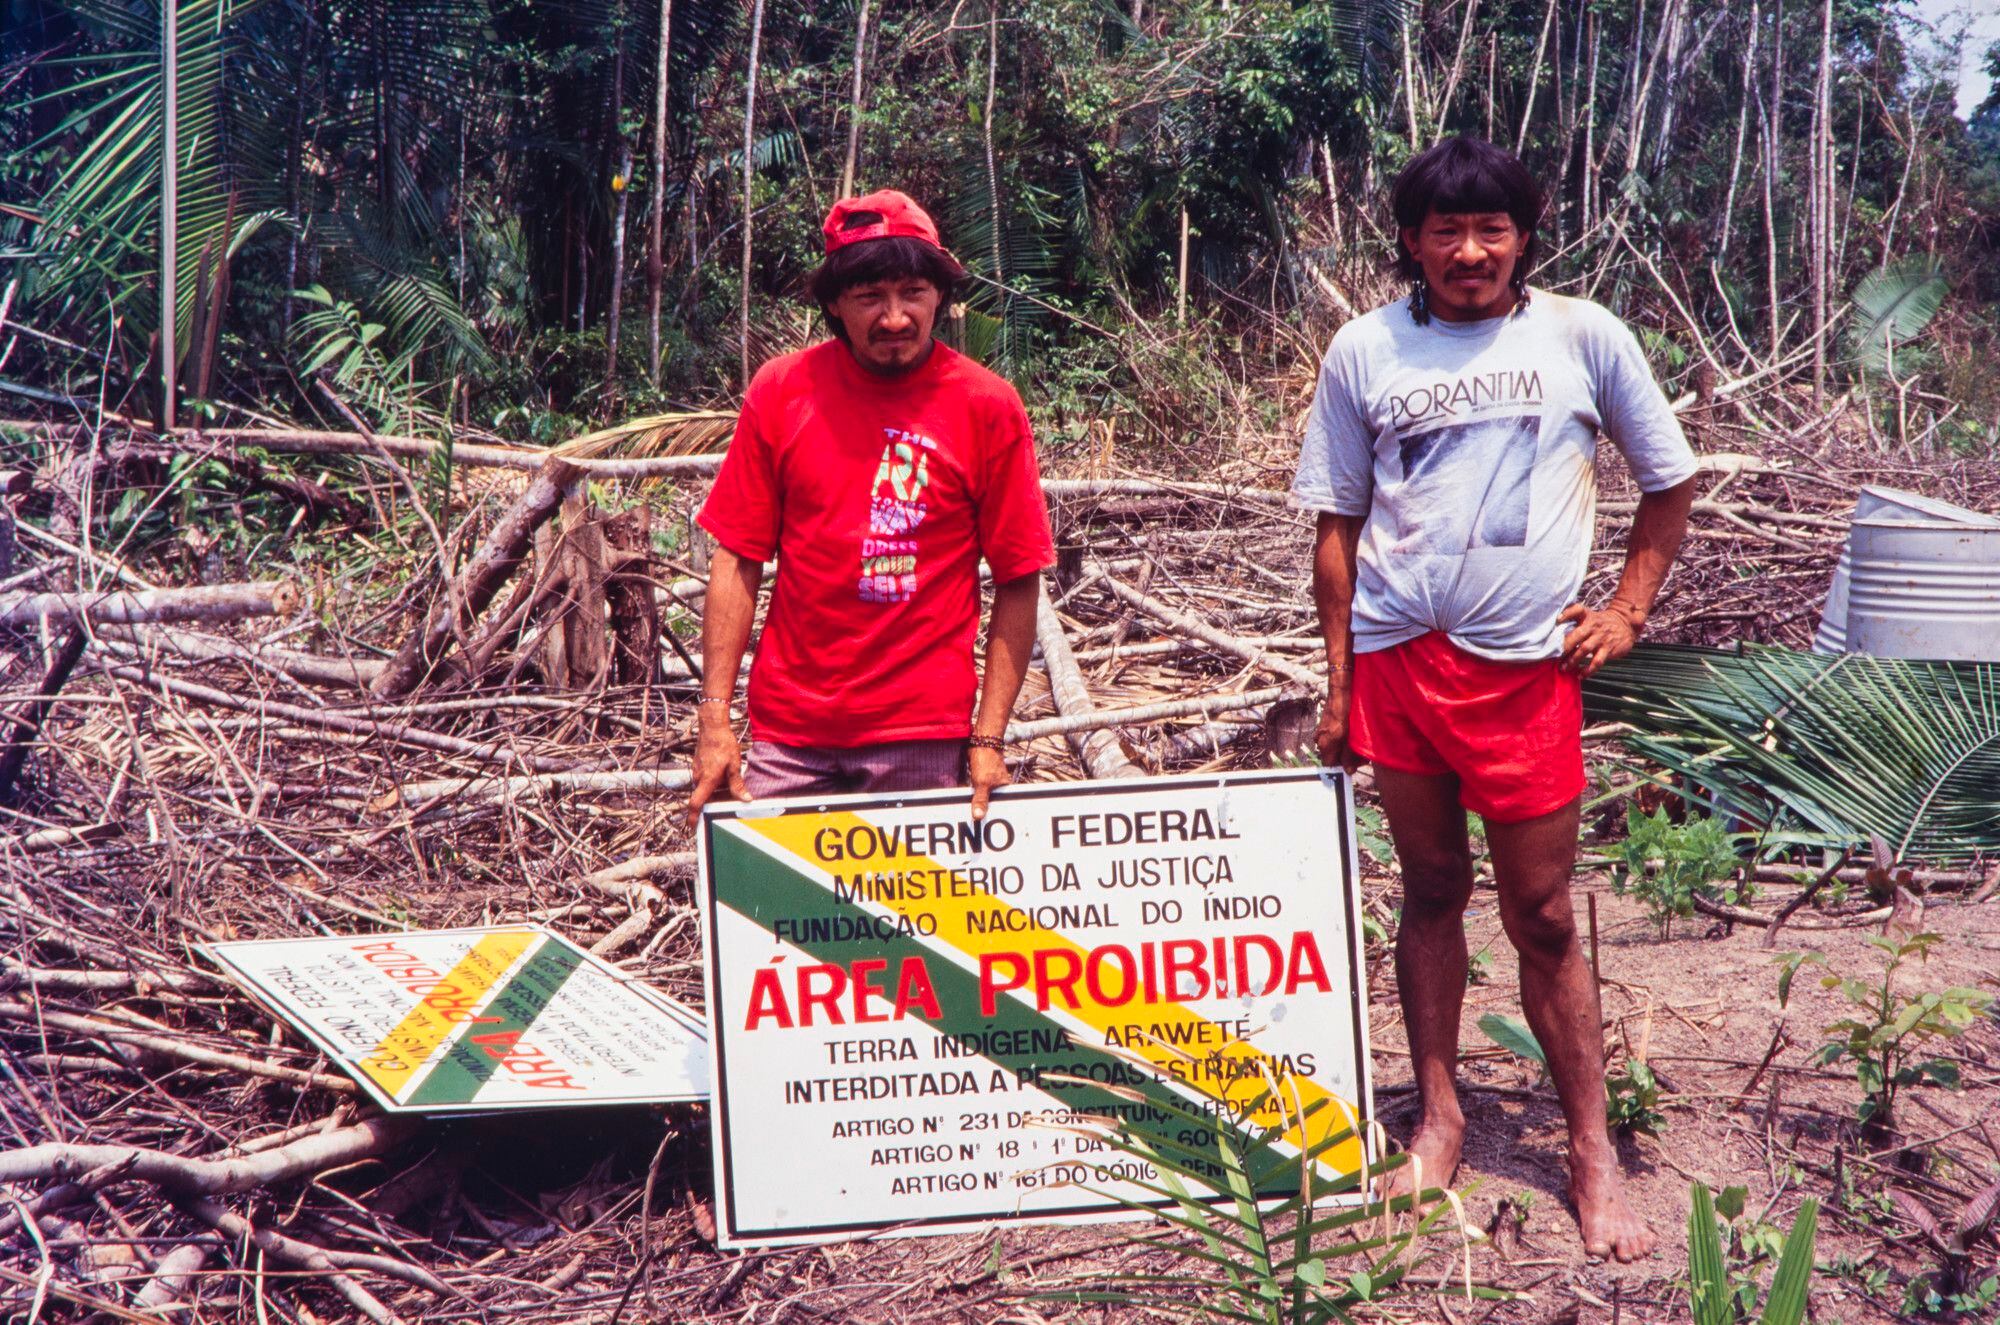 Dos indígenas araweté, durante la operación para demarcar la Tierra Indígena Araweté, en el estado brasileño de Pará.